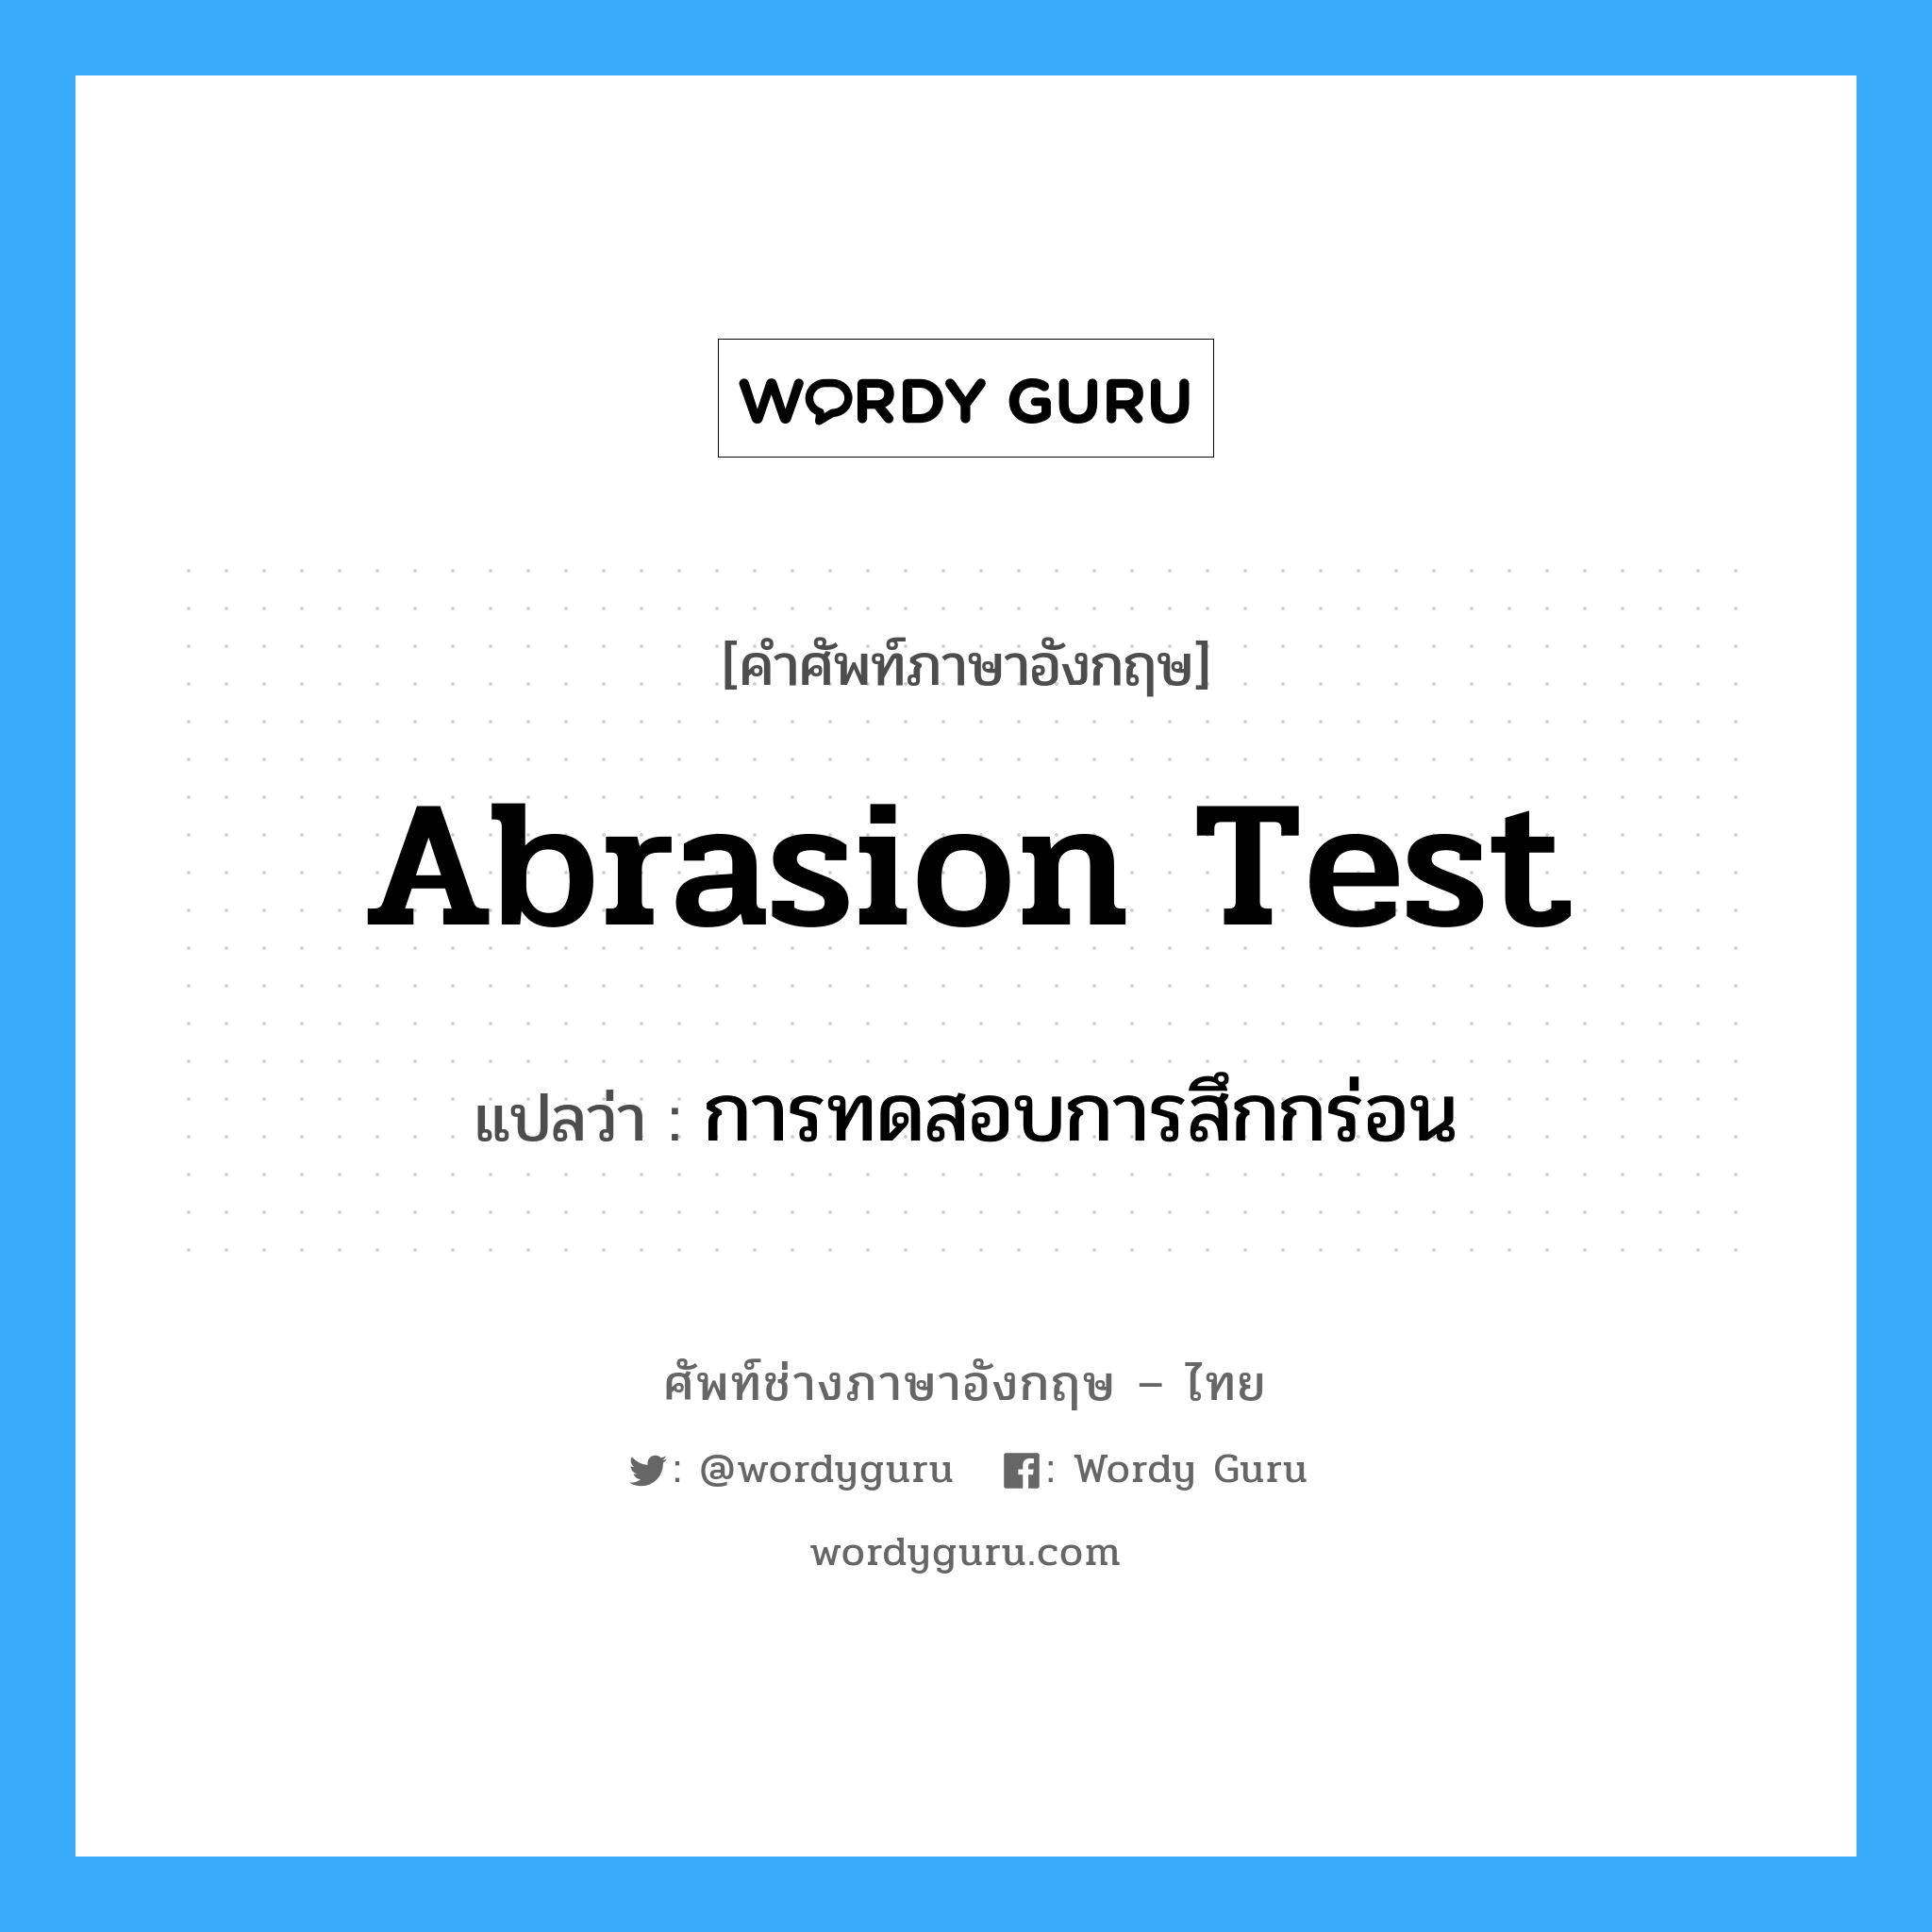 abrasion test แปลว่า?, คำศัพท์ช่างภาษาอังกฤษ - ไทย abrasion test คำศัพท์ภาษาอังกฤษ abrasion test แปลว่า การทดสอบการสึกกร่อน